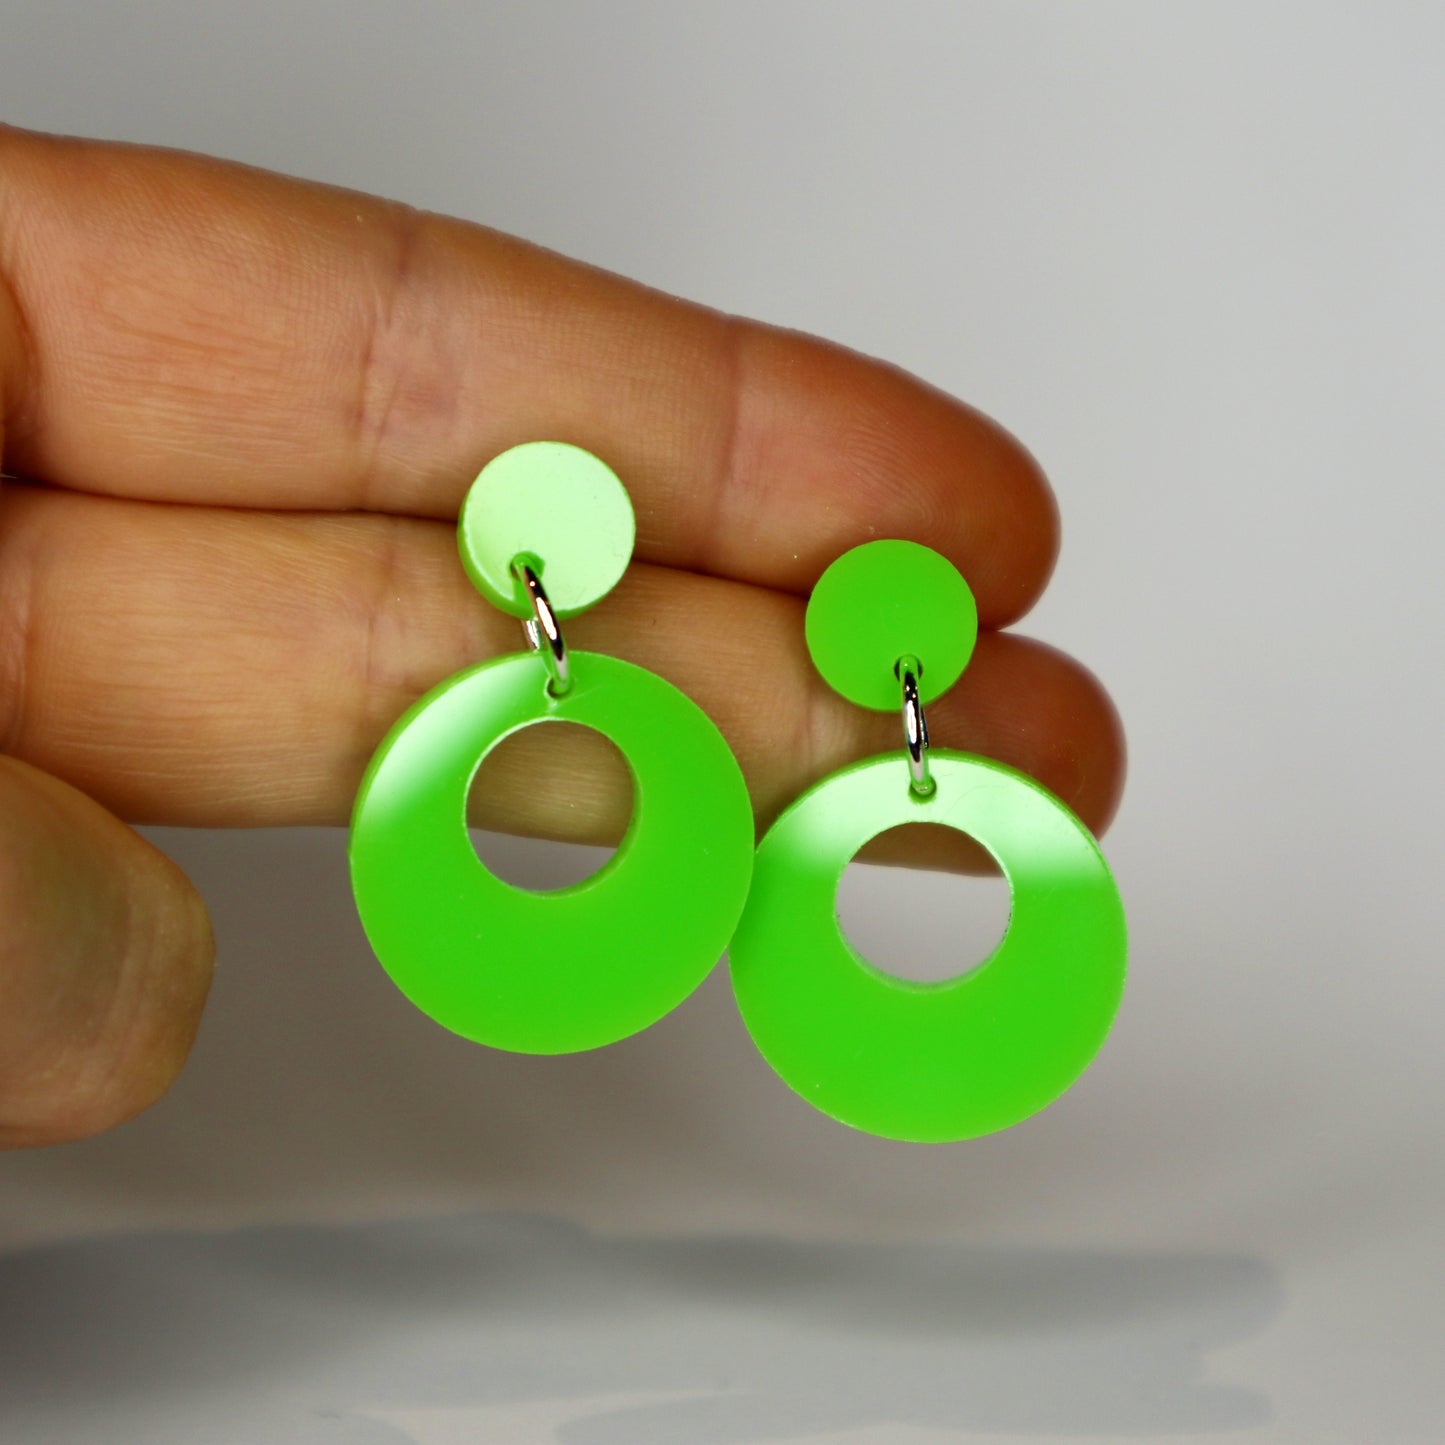 Retro Mod Earrings - laser cut acrylic - green